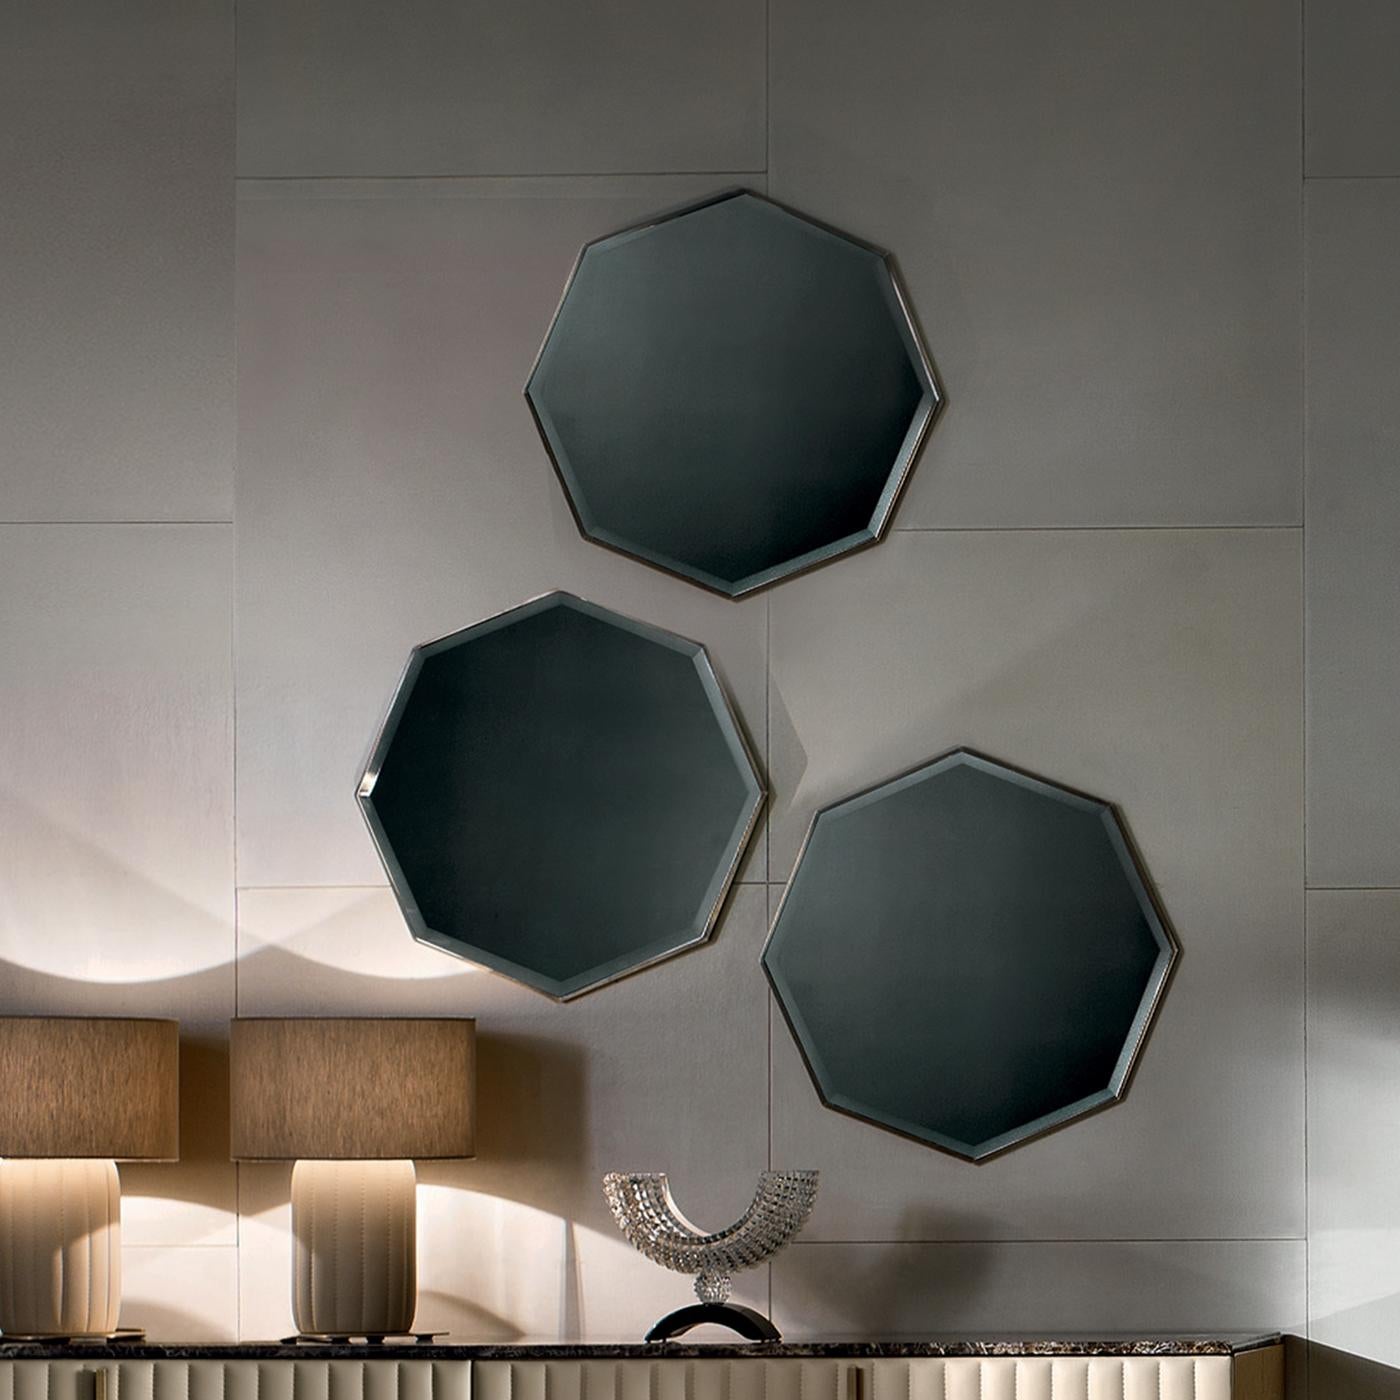 Dieser retro-inspirierte Spiegel aus brüniertem Messing verschönert jede Wand mit einem minimalistischen und doch modernen Look. Der schlanke und elegante achteckige Rahmen mit seiner dezenten und warmen gebürsteten Oberfläche kann über einer